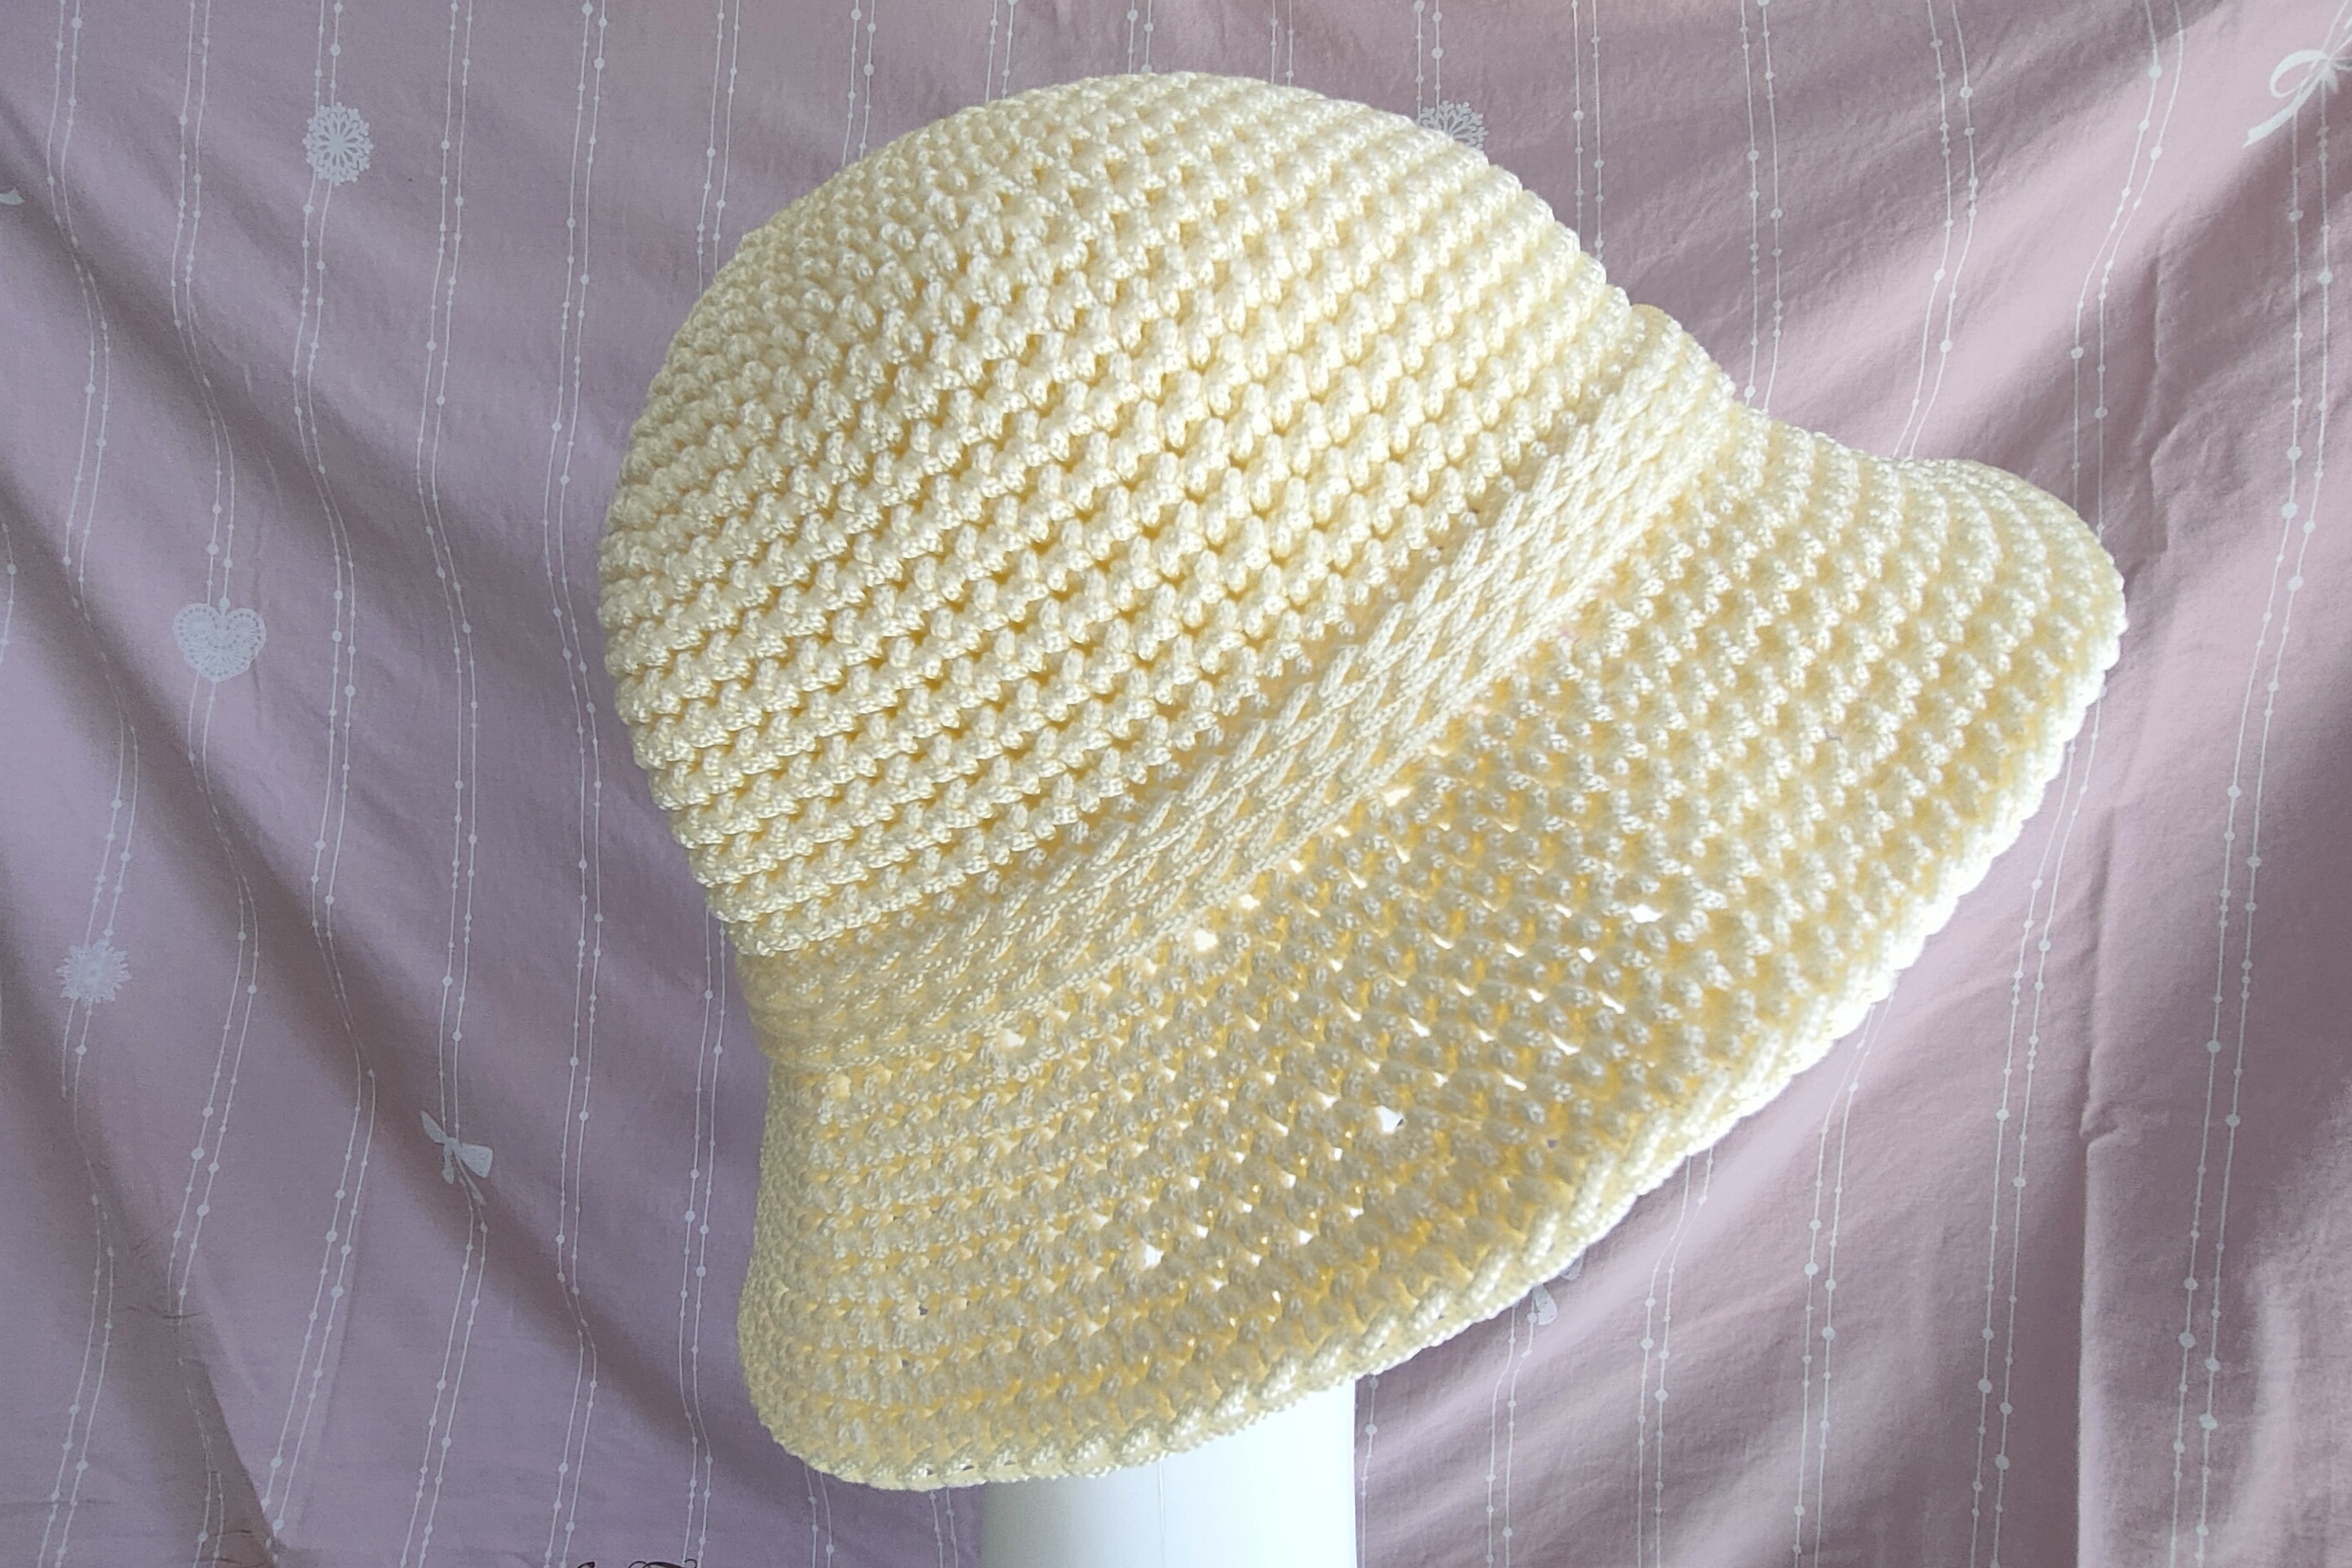 简单时尚百搭冰丝粗线钩织的夏凉帽教程上集,好看的渔夫帽